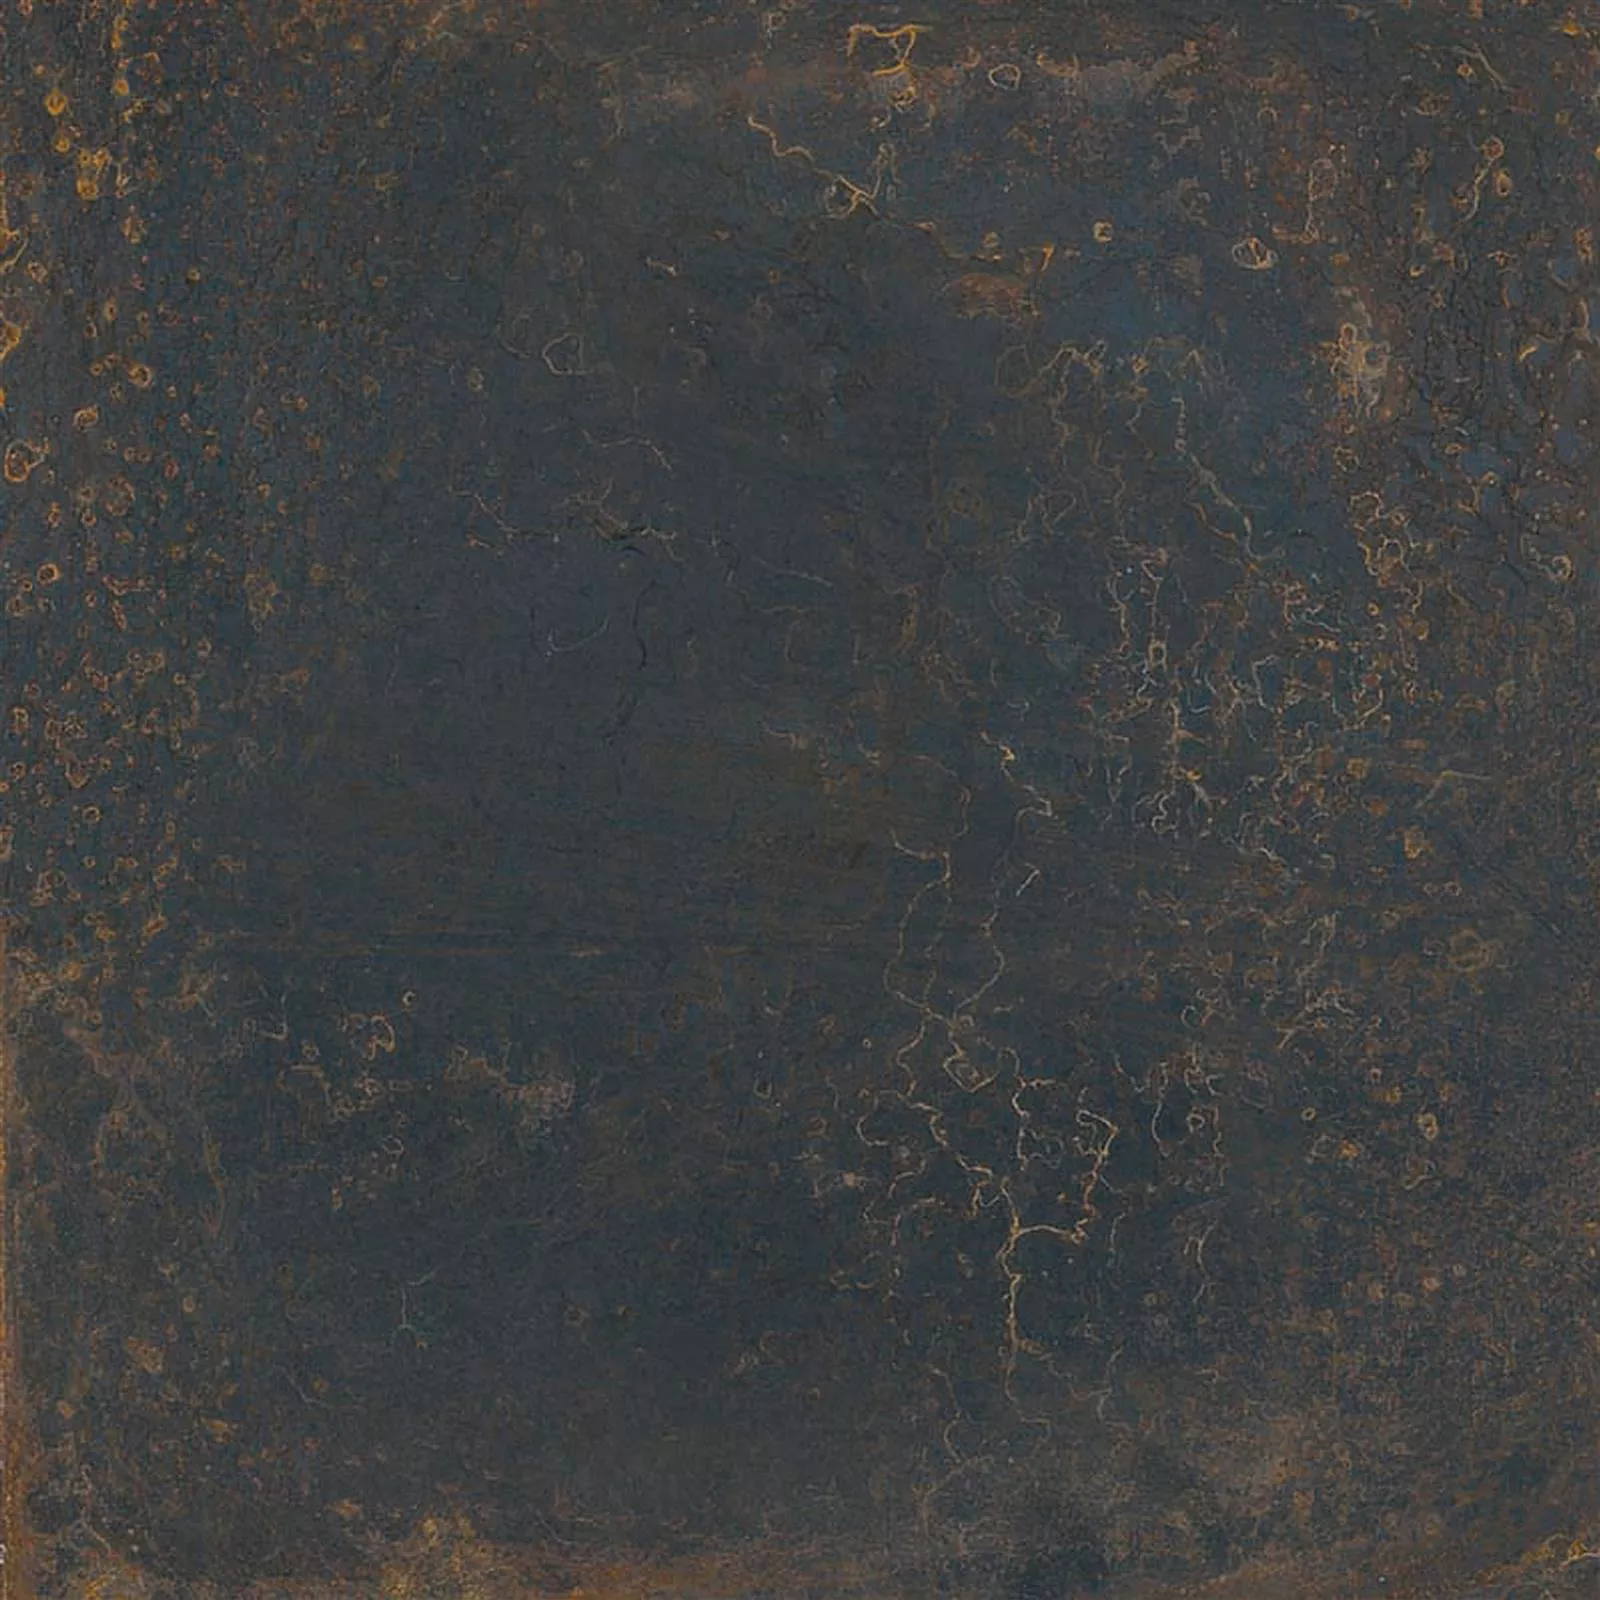 Próbka Płytki Ścienne Vedel Matowy 20x20cm Czarny